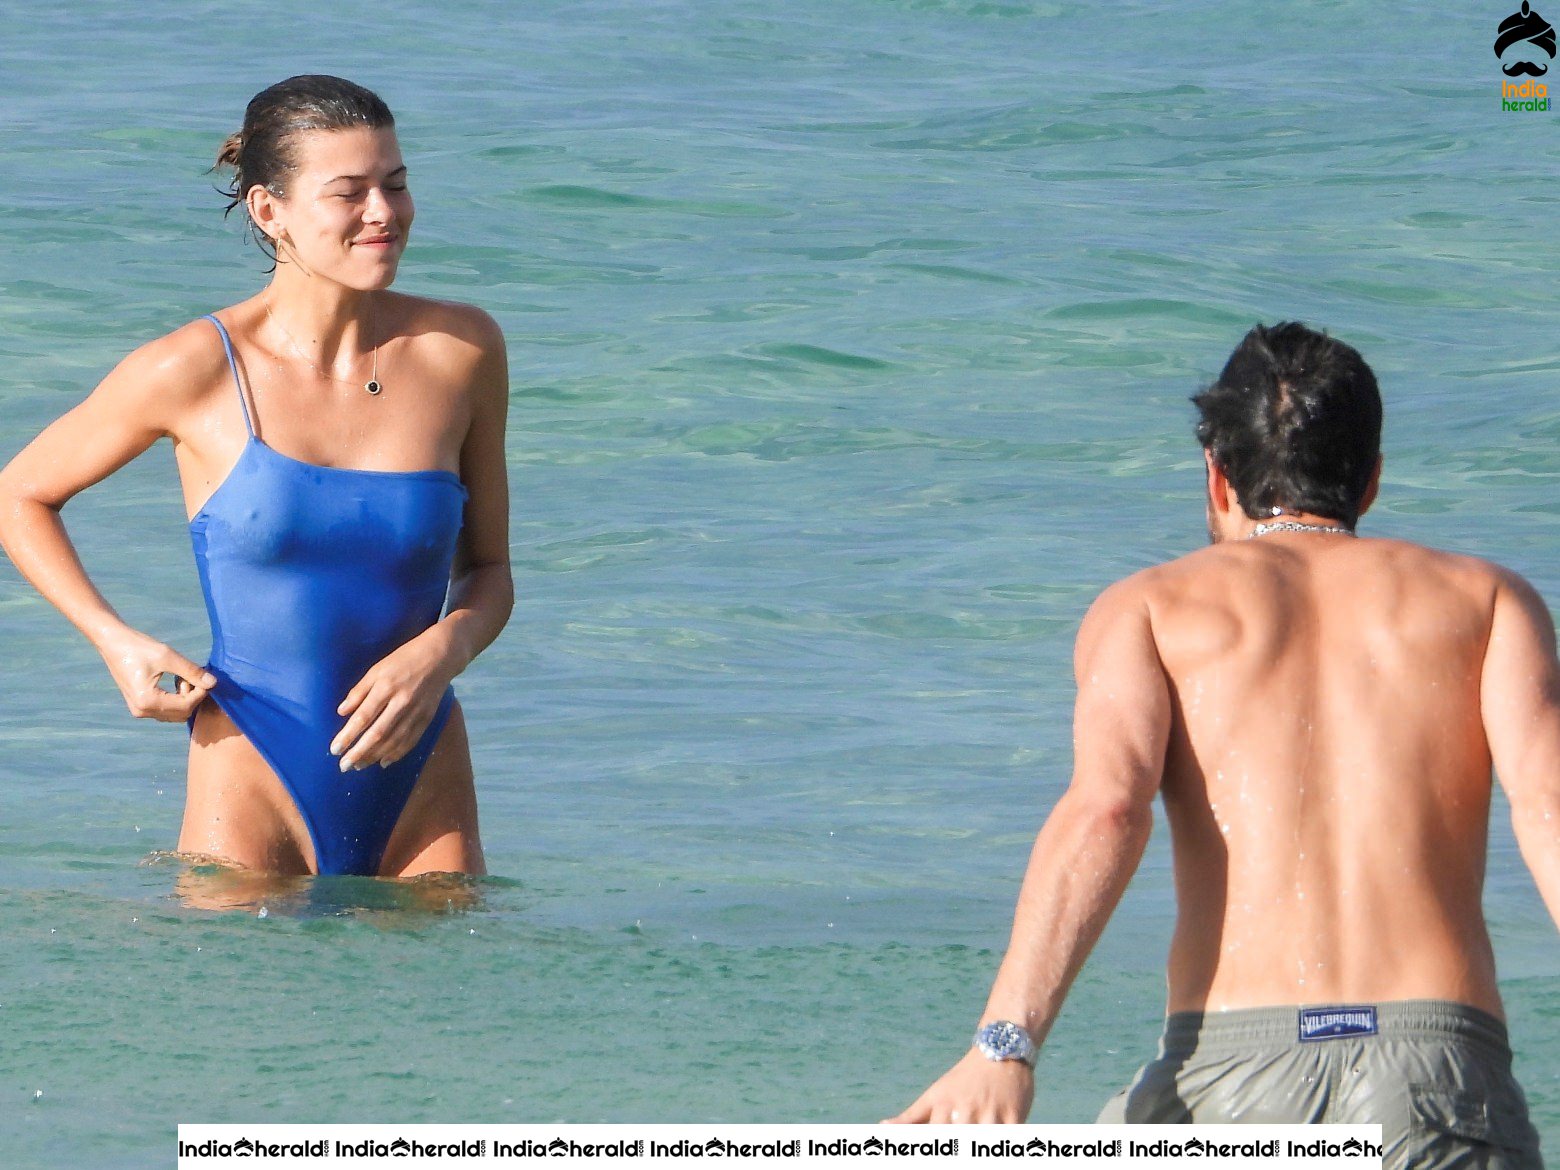 Georgia Fowler in Bikini enjoying with Boyfriend on the beach in Sydney